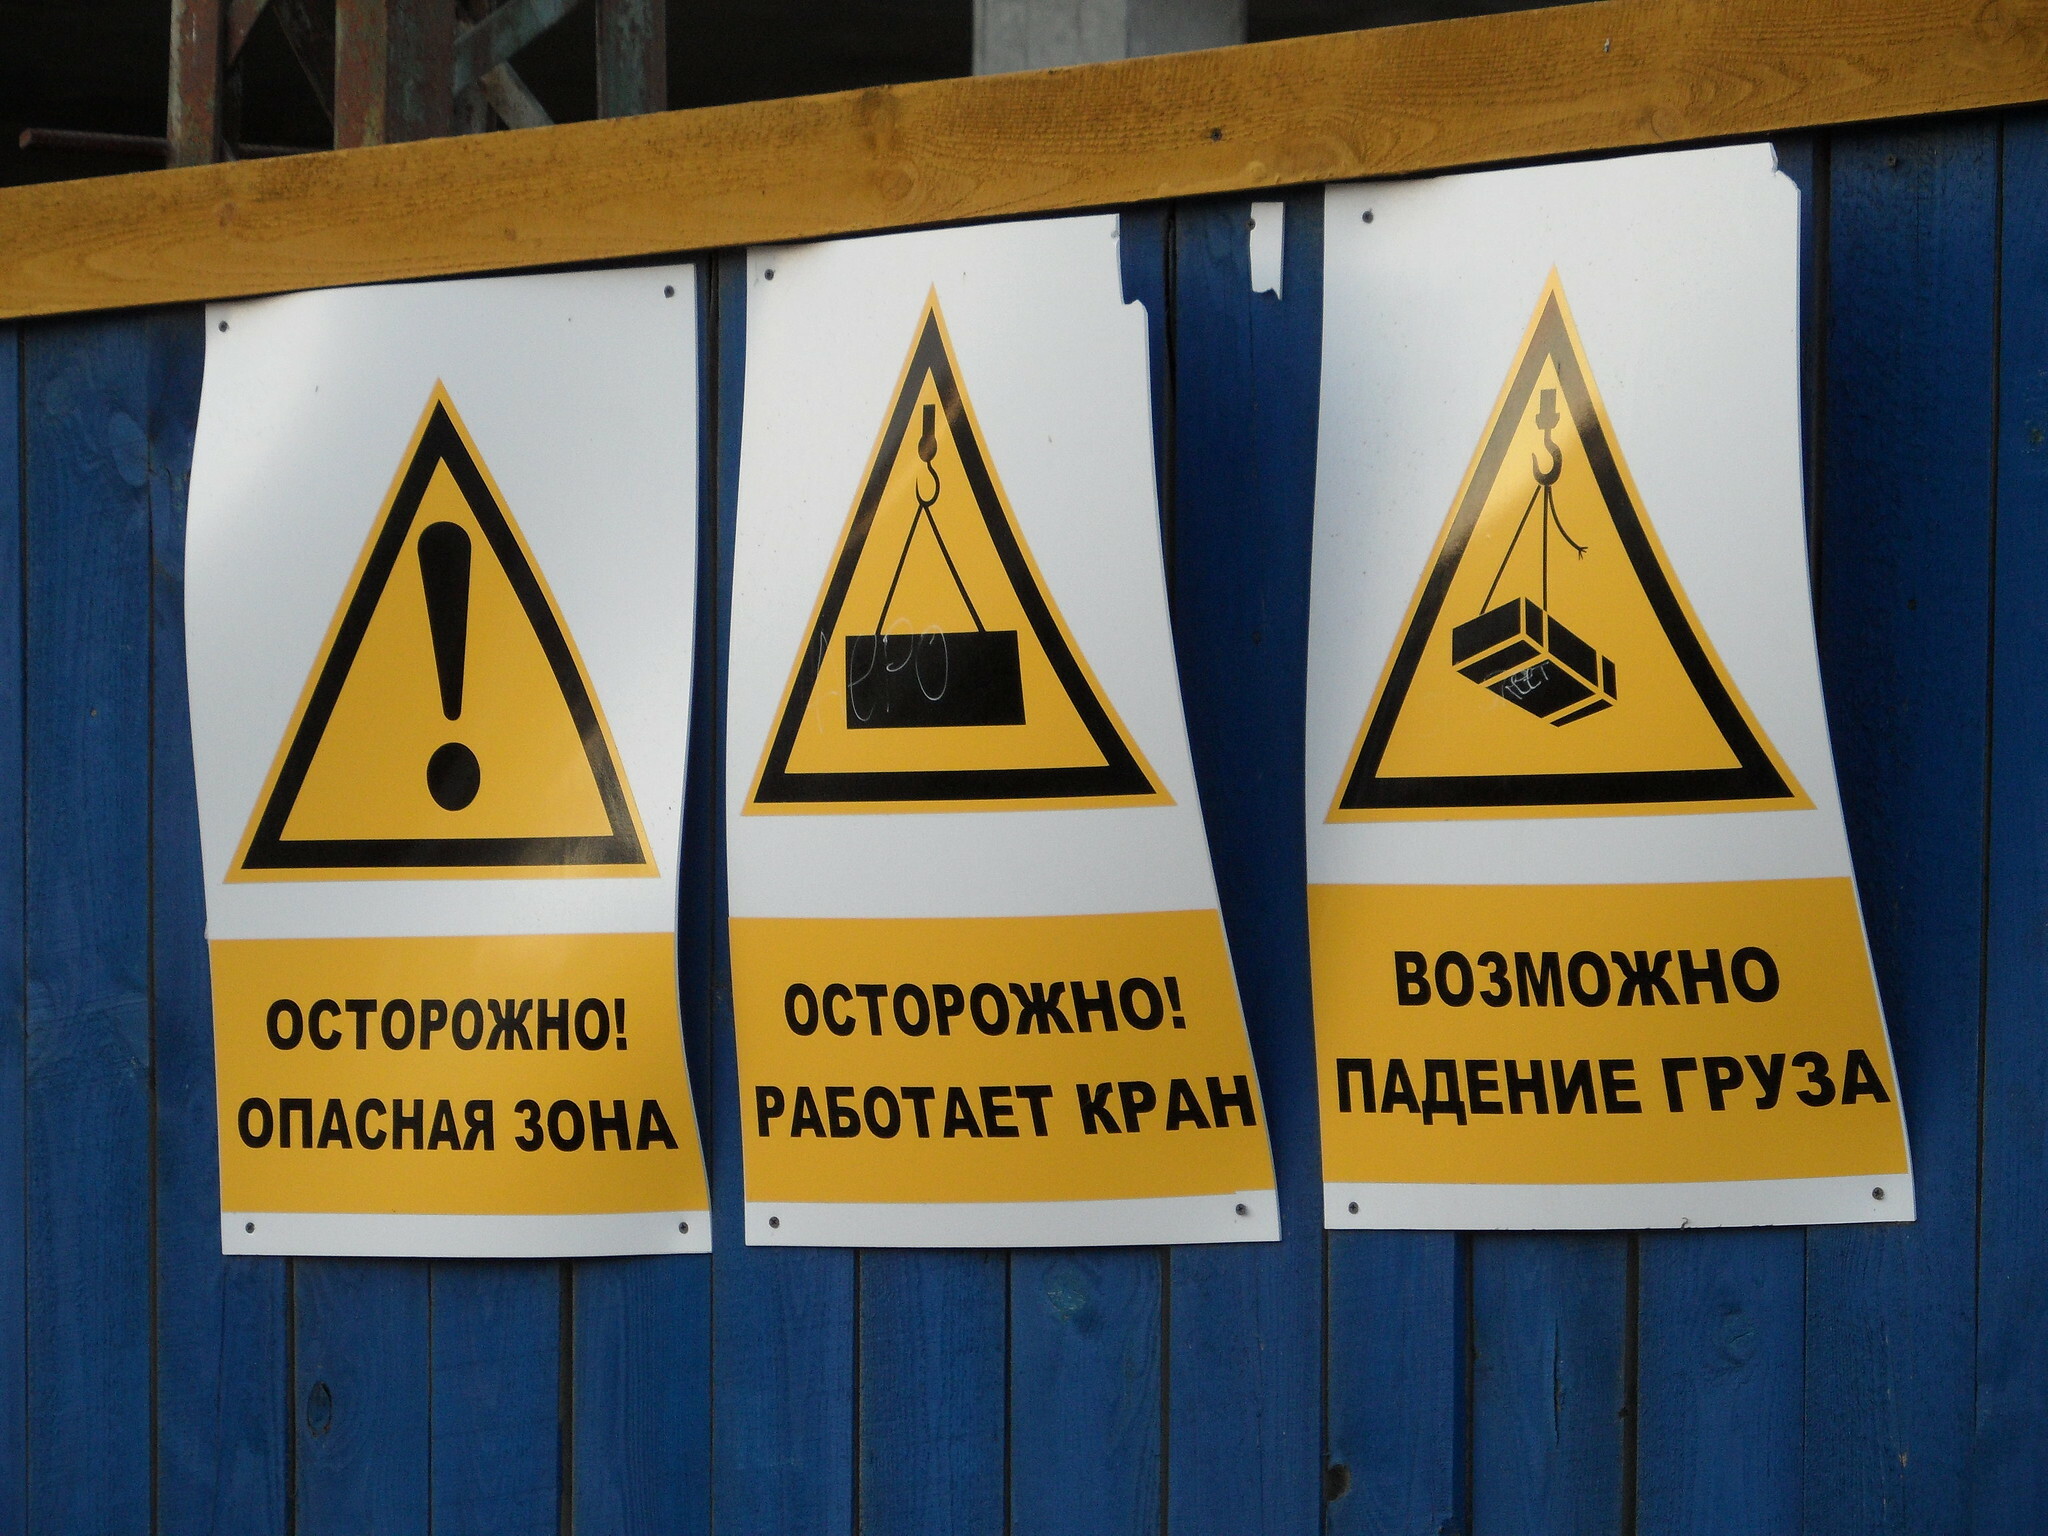 Краны, которые не смогли: приставы Хабаровска запретили работать двум мостовым кранам